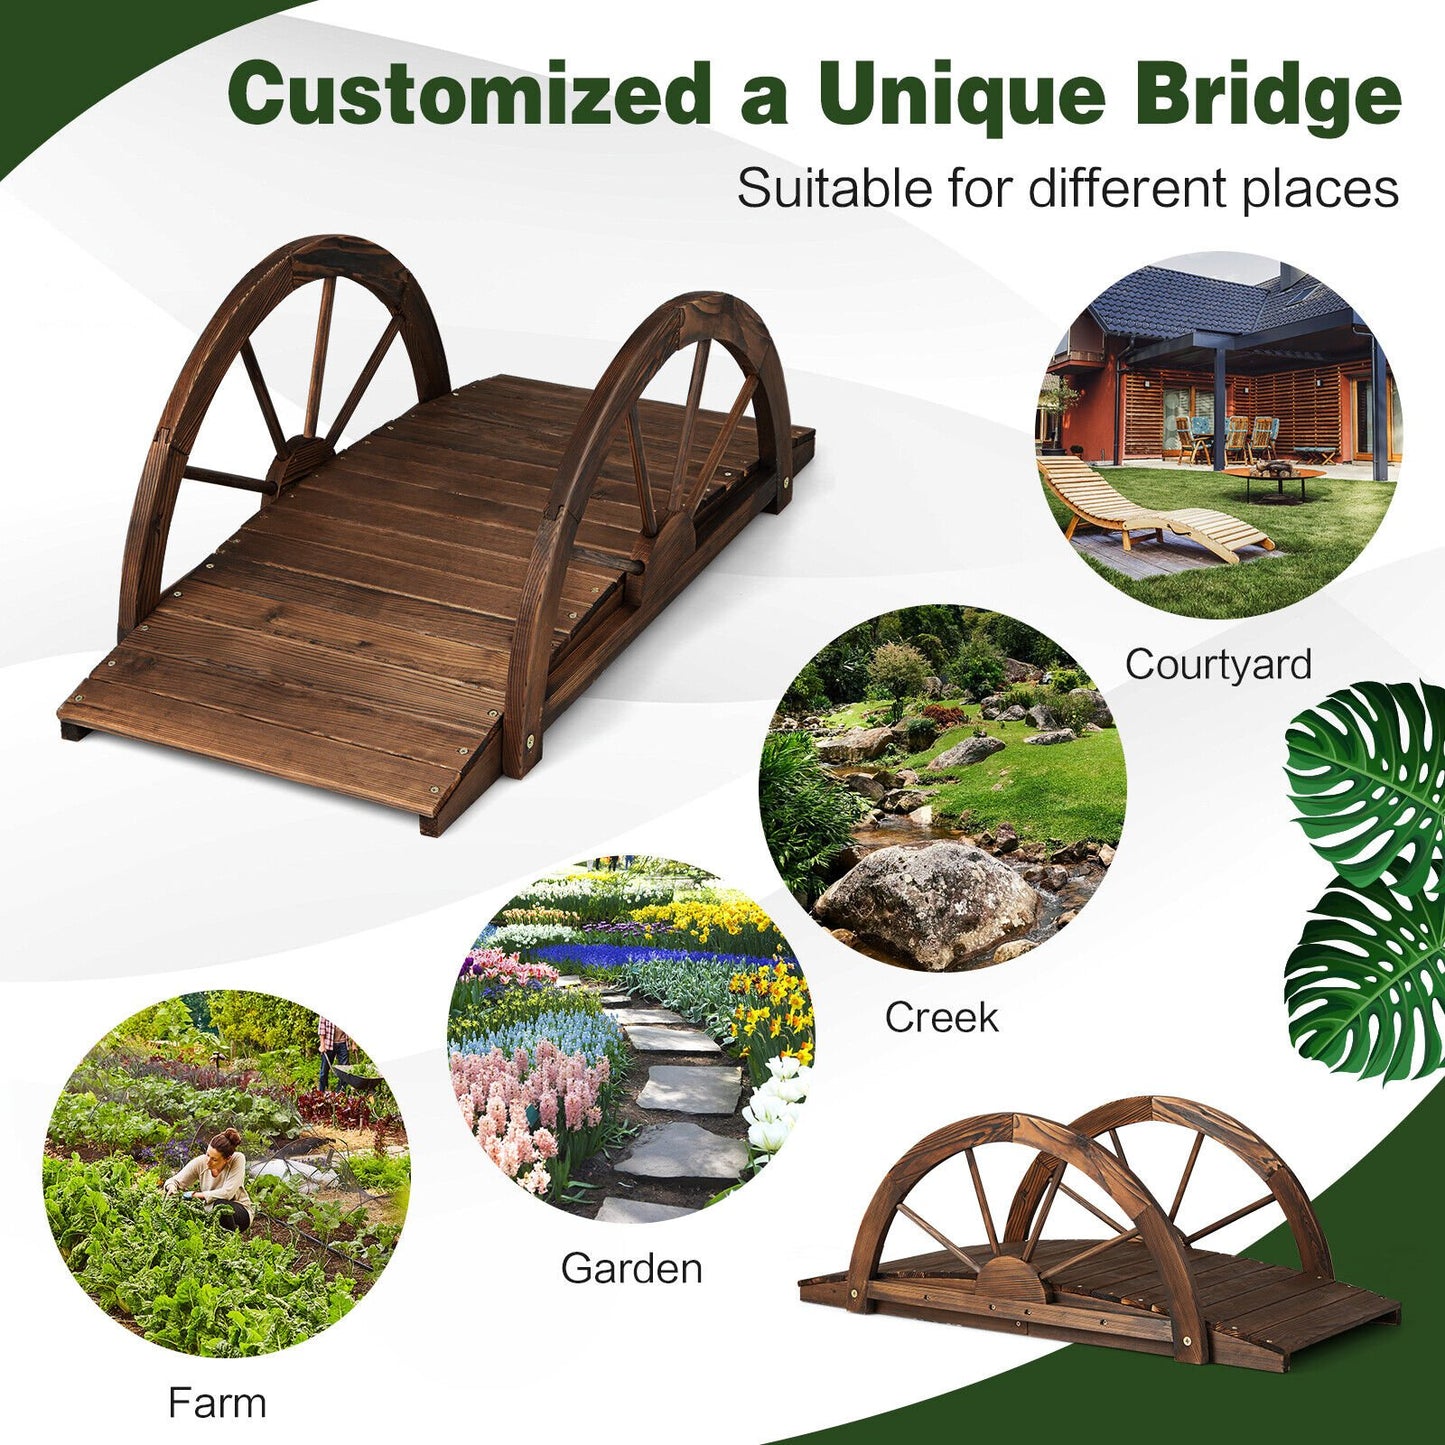 3.3 Feet Wooden Garden Bridge with Half-Wheel Safety Rails, Rustic Brown